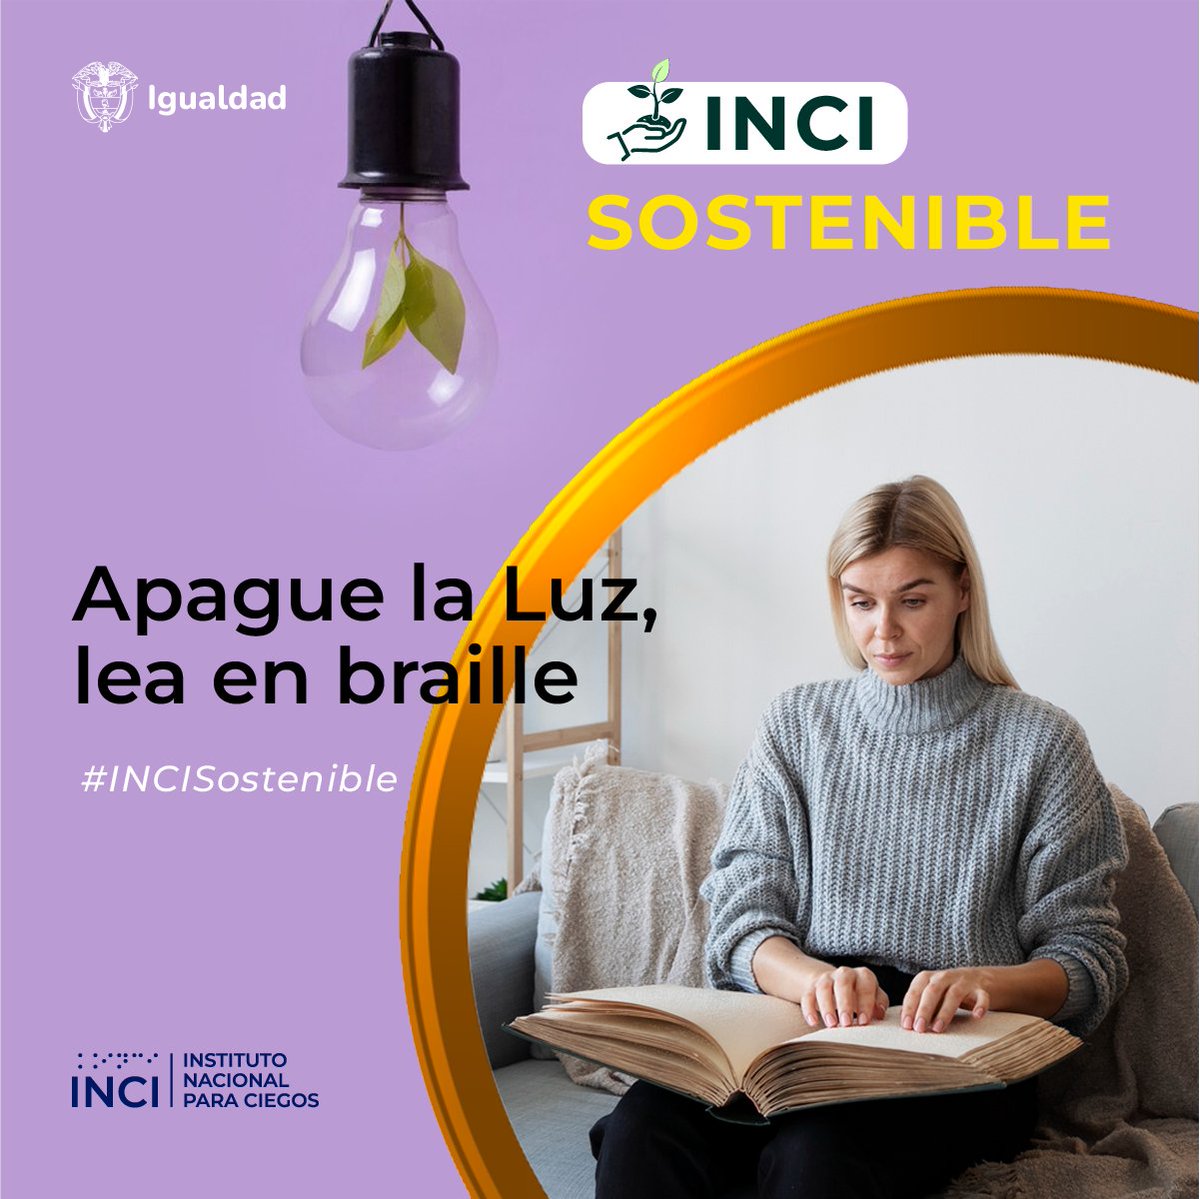 #INCISostenible | Apoye a reducir el consumo de electricidad y disfrute de los textos accesibles, sin necesidad de gastar energía en dispositivos móviles o computadores.